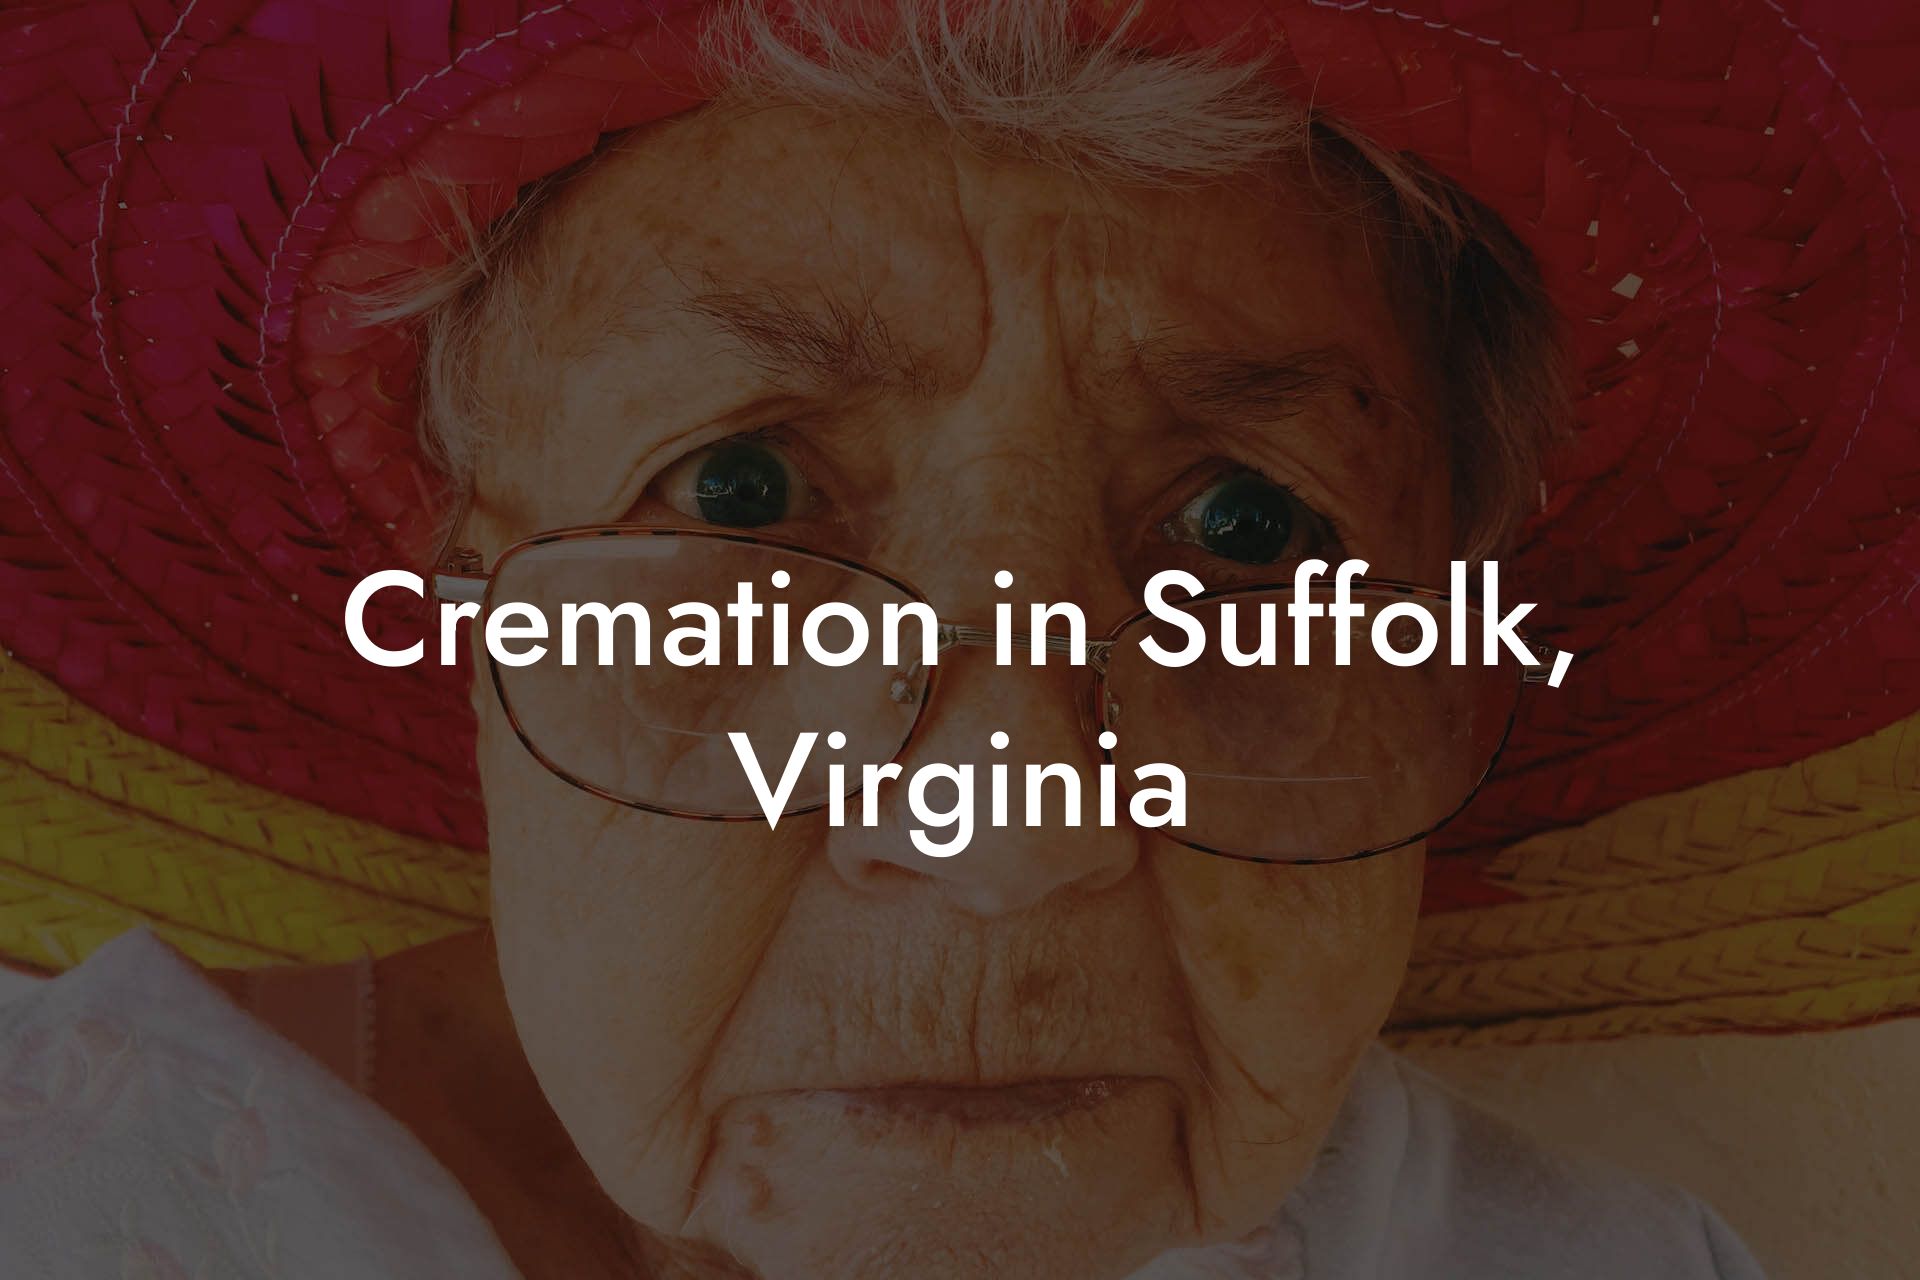 Cremation in Suffolk, Virginia